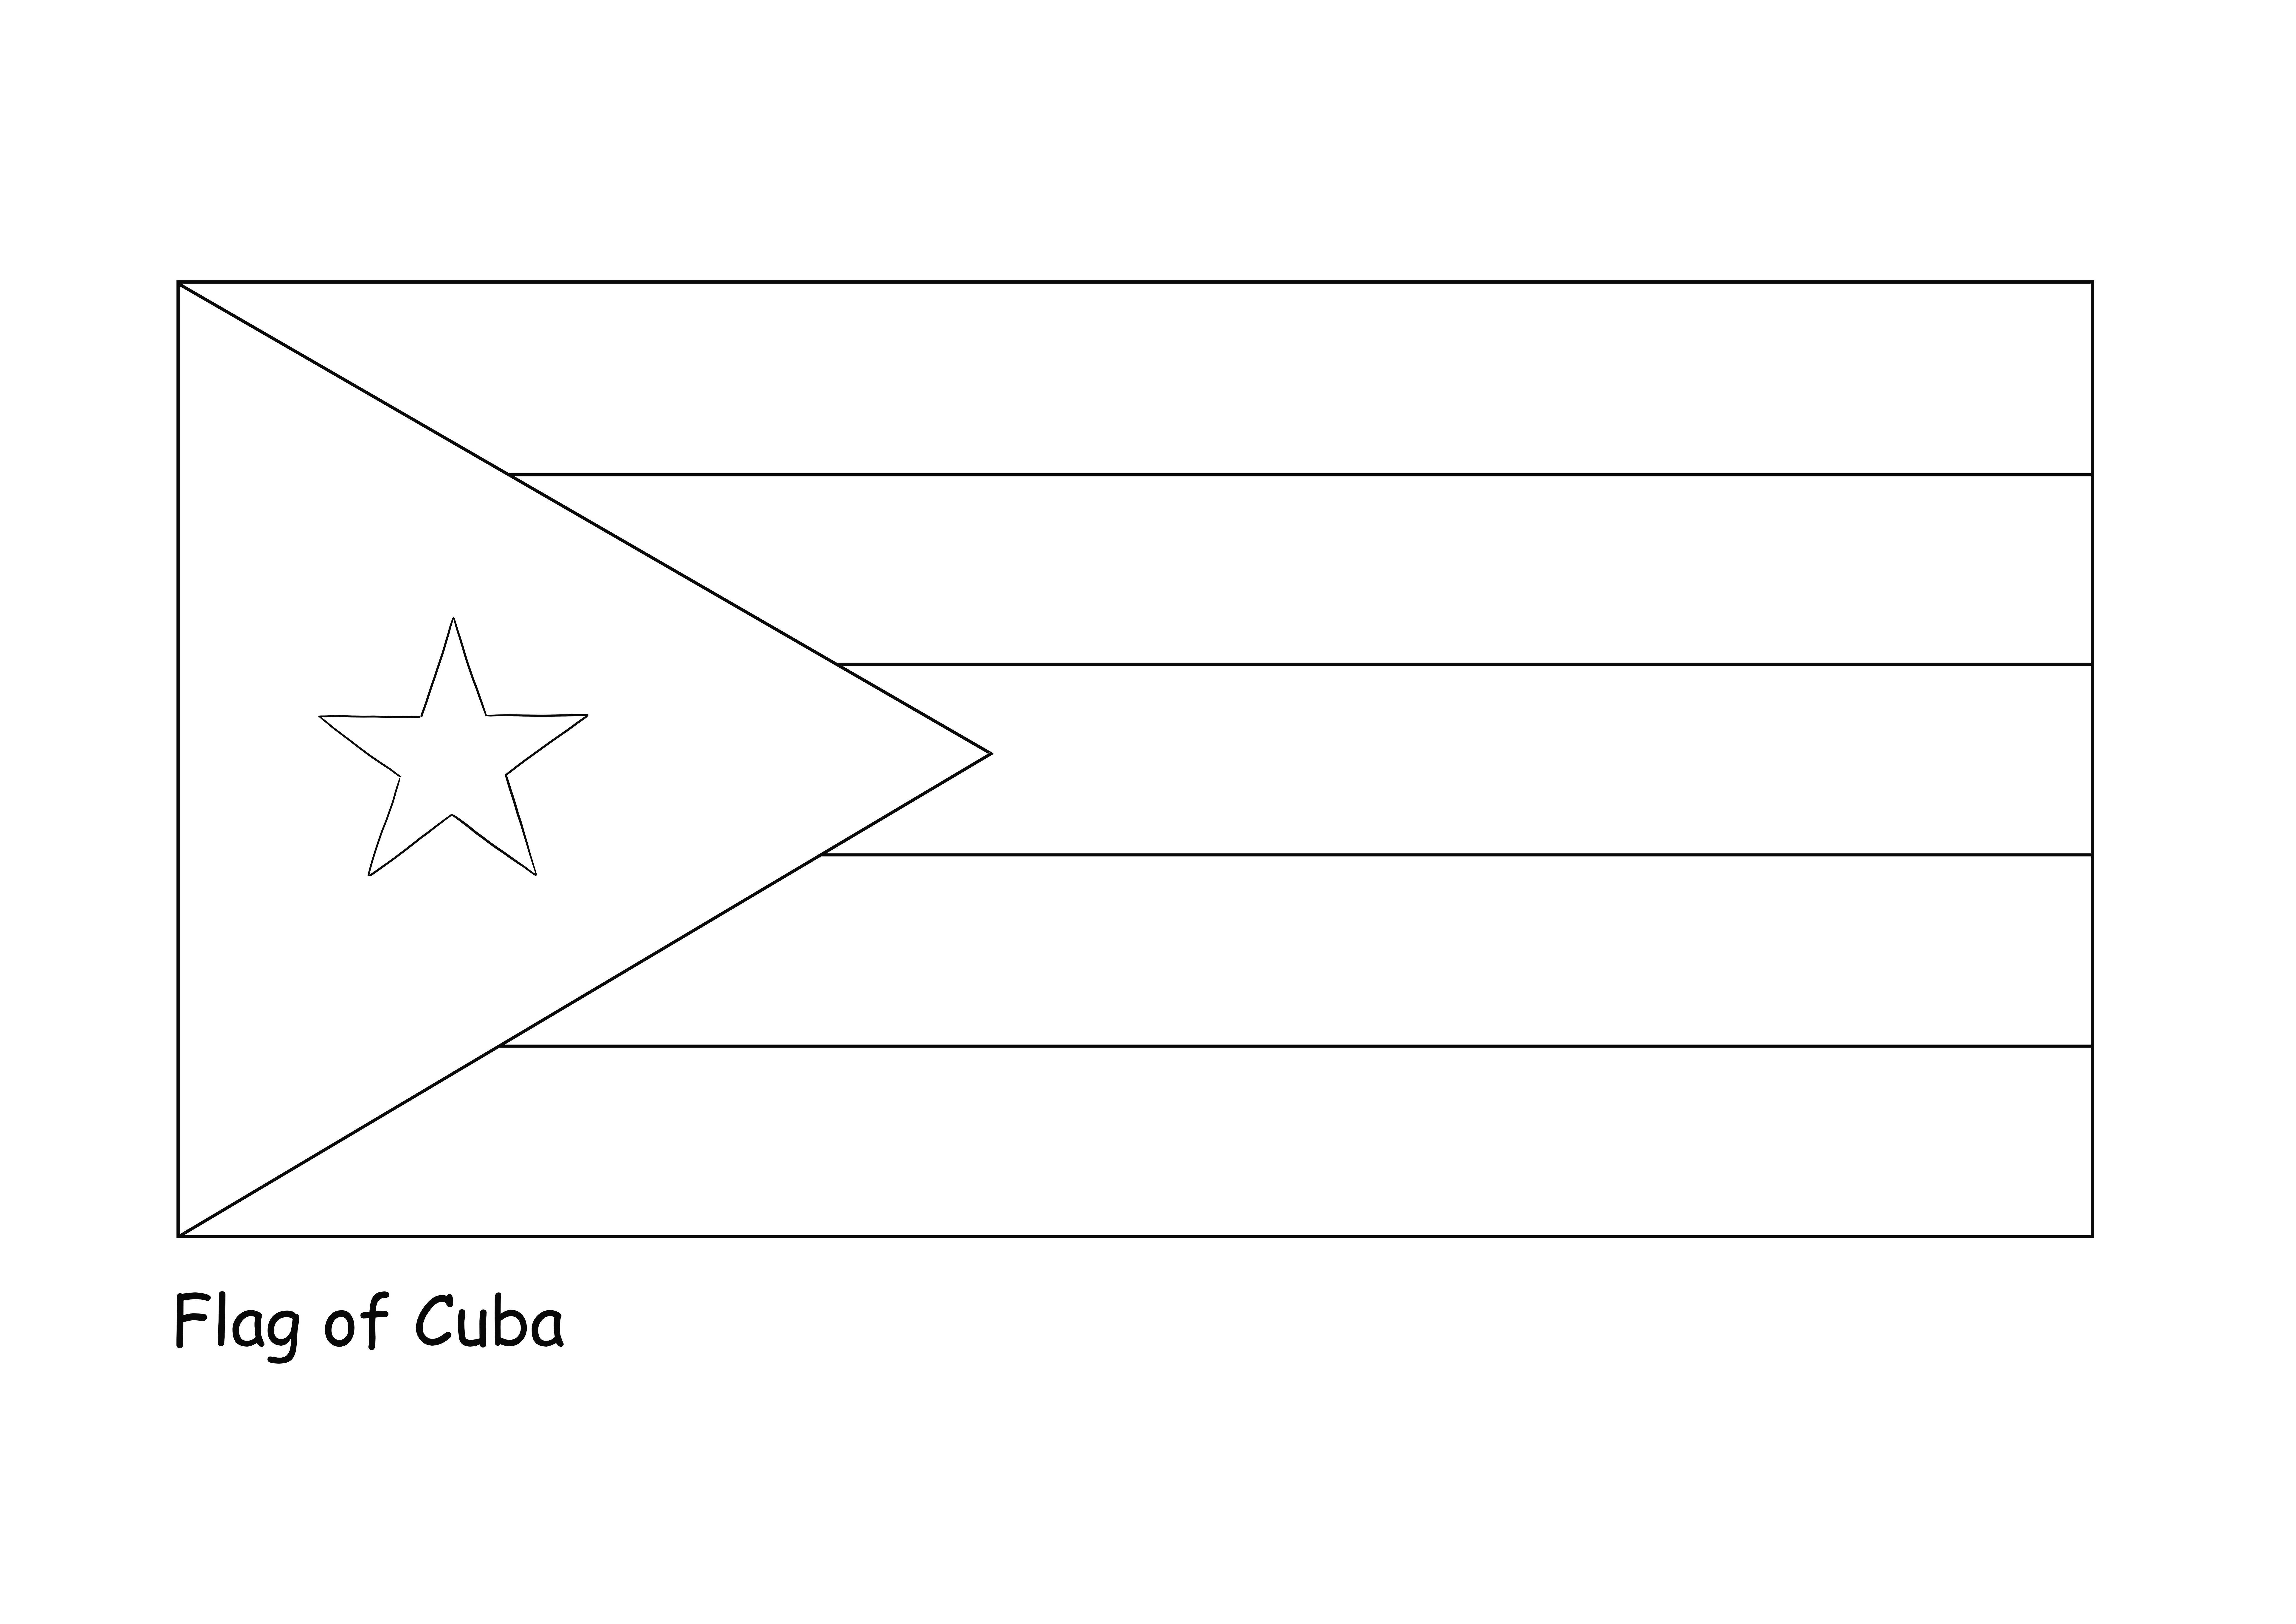 Immagine da colorare facile da colorare della bandiera di Cuba da scaricare gratuitamente per i bambini